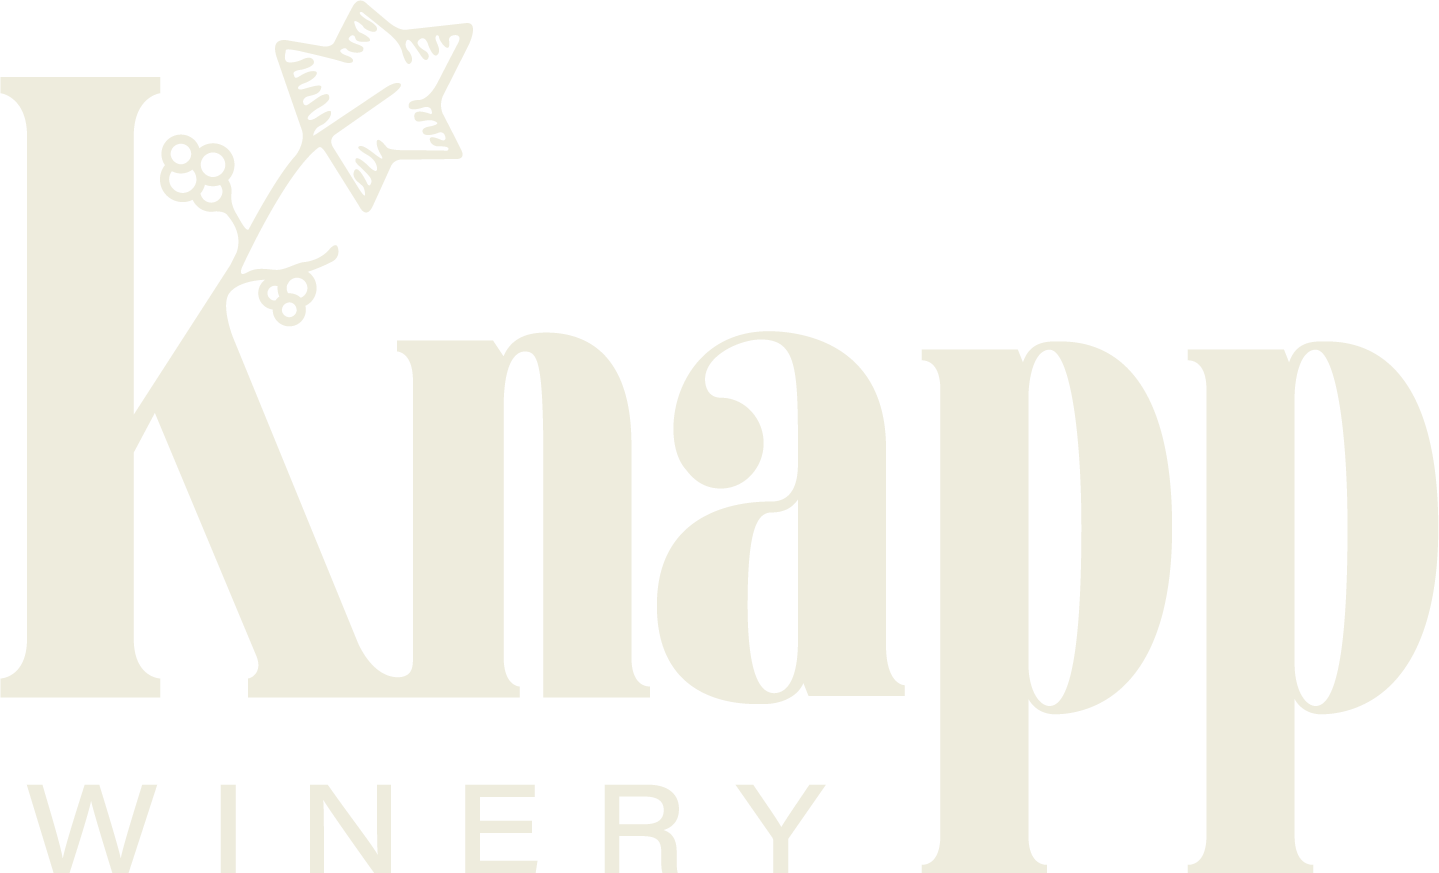 Knapp Winery